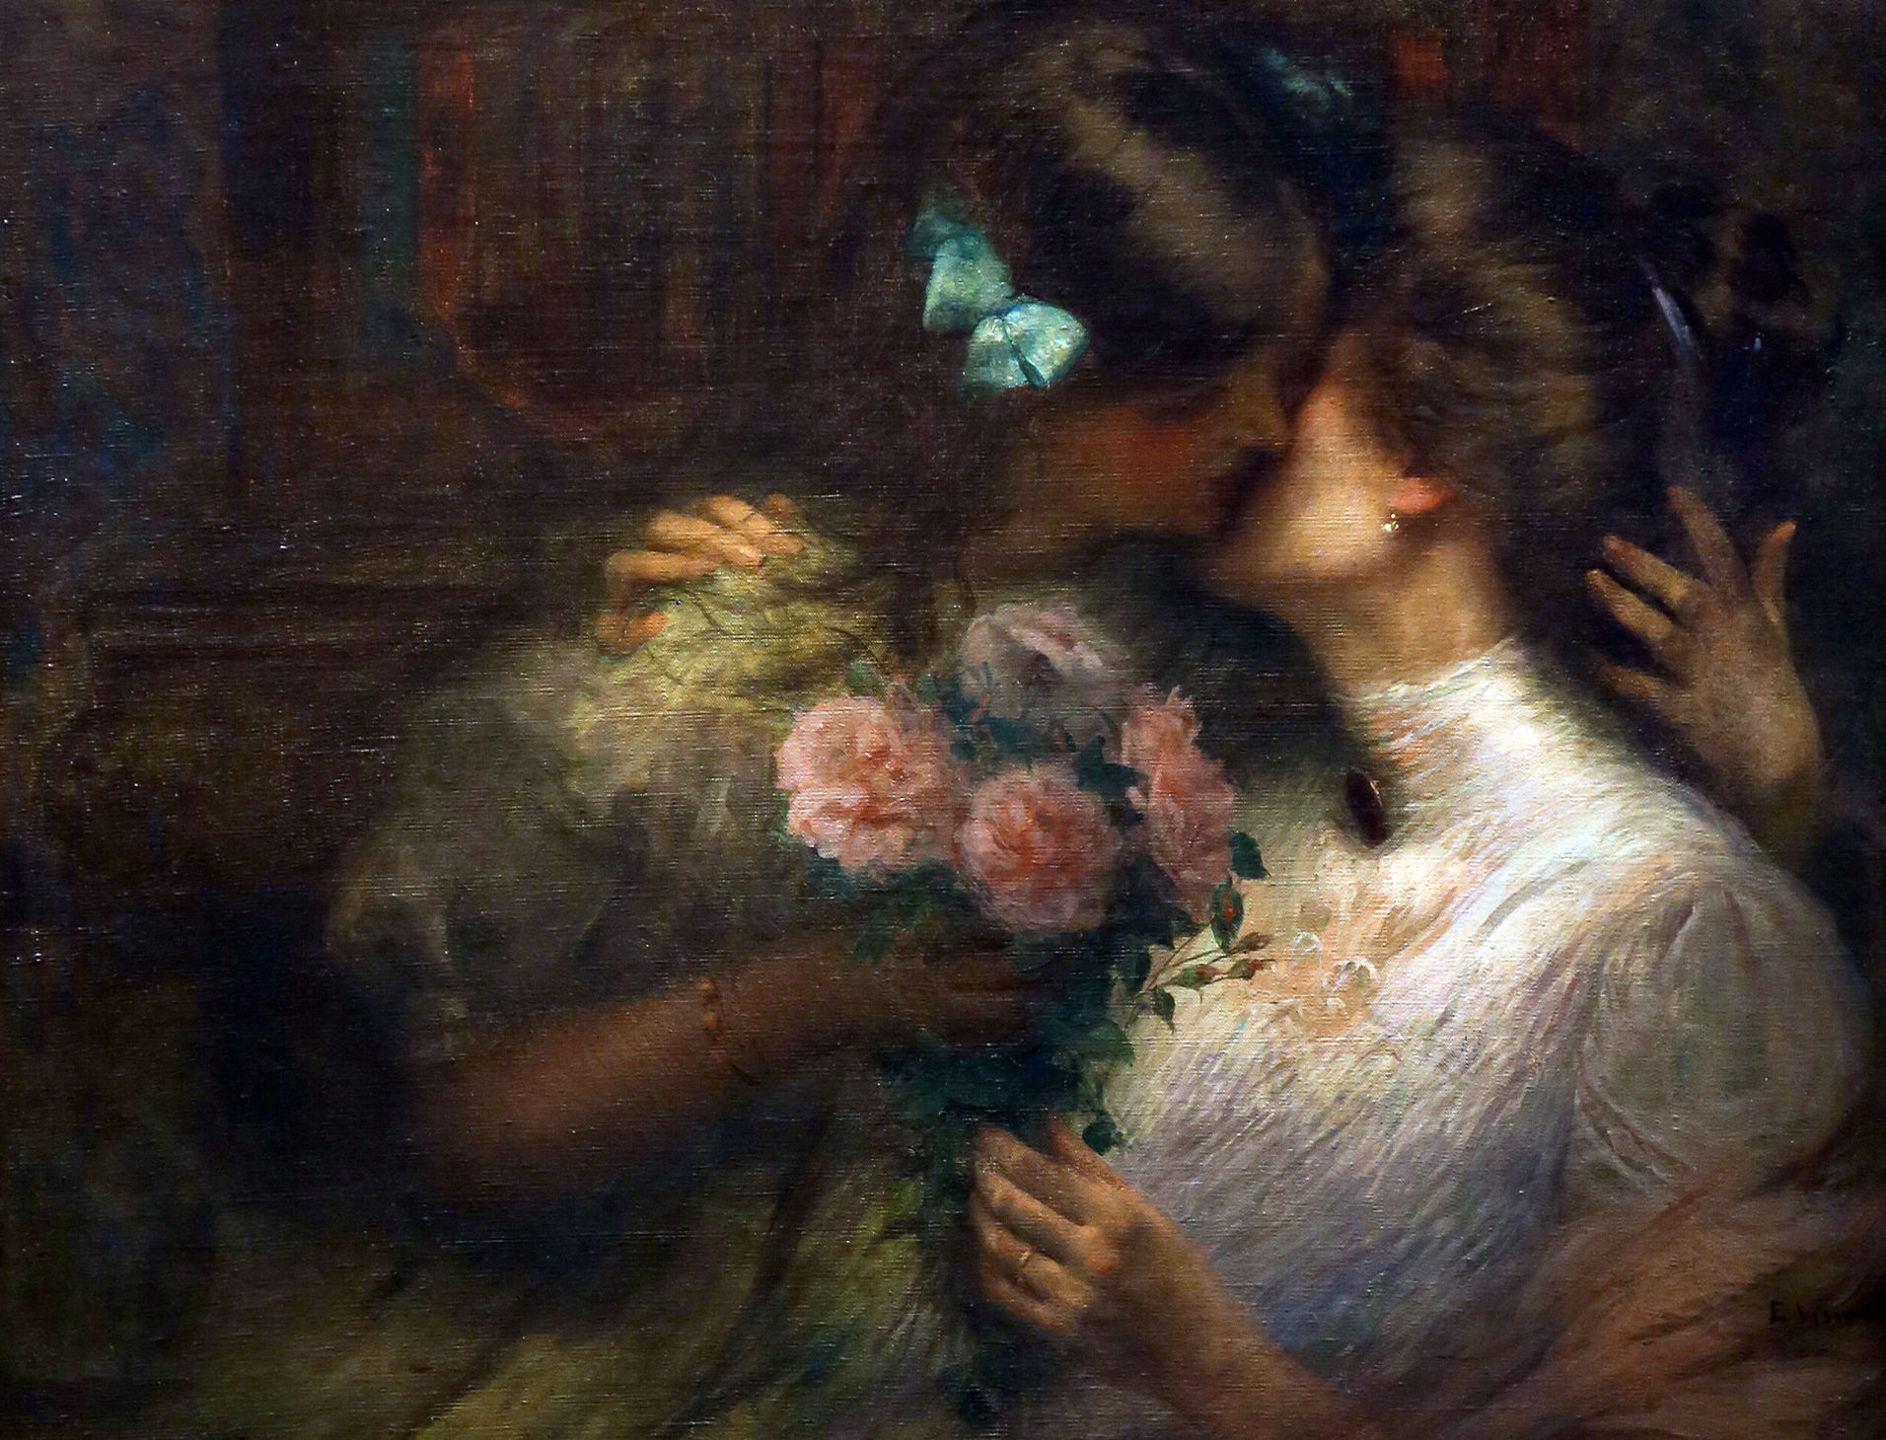 Eliseu Visconti. O beijo, 1909. Oil on canvas.